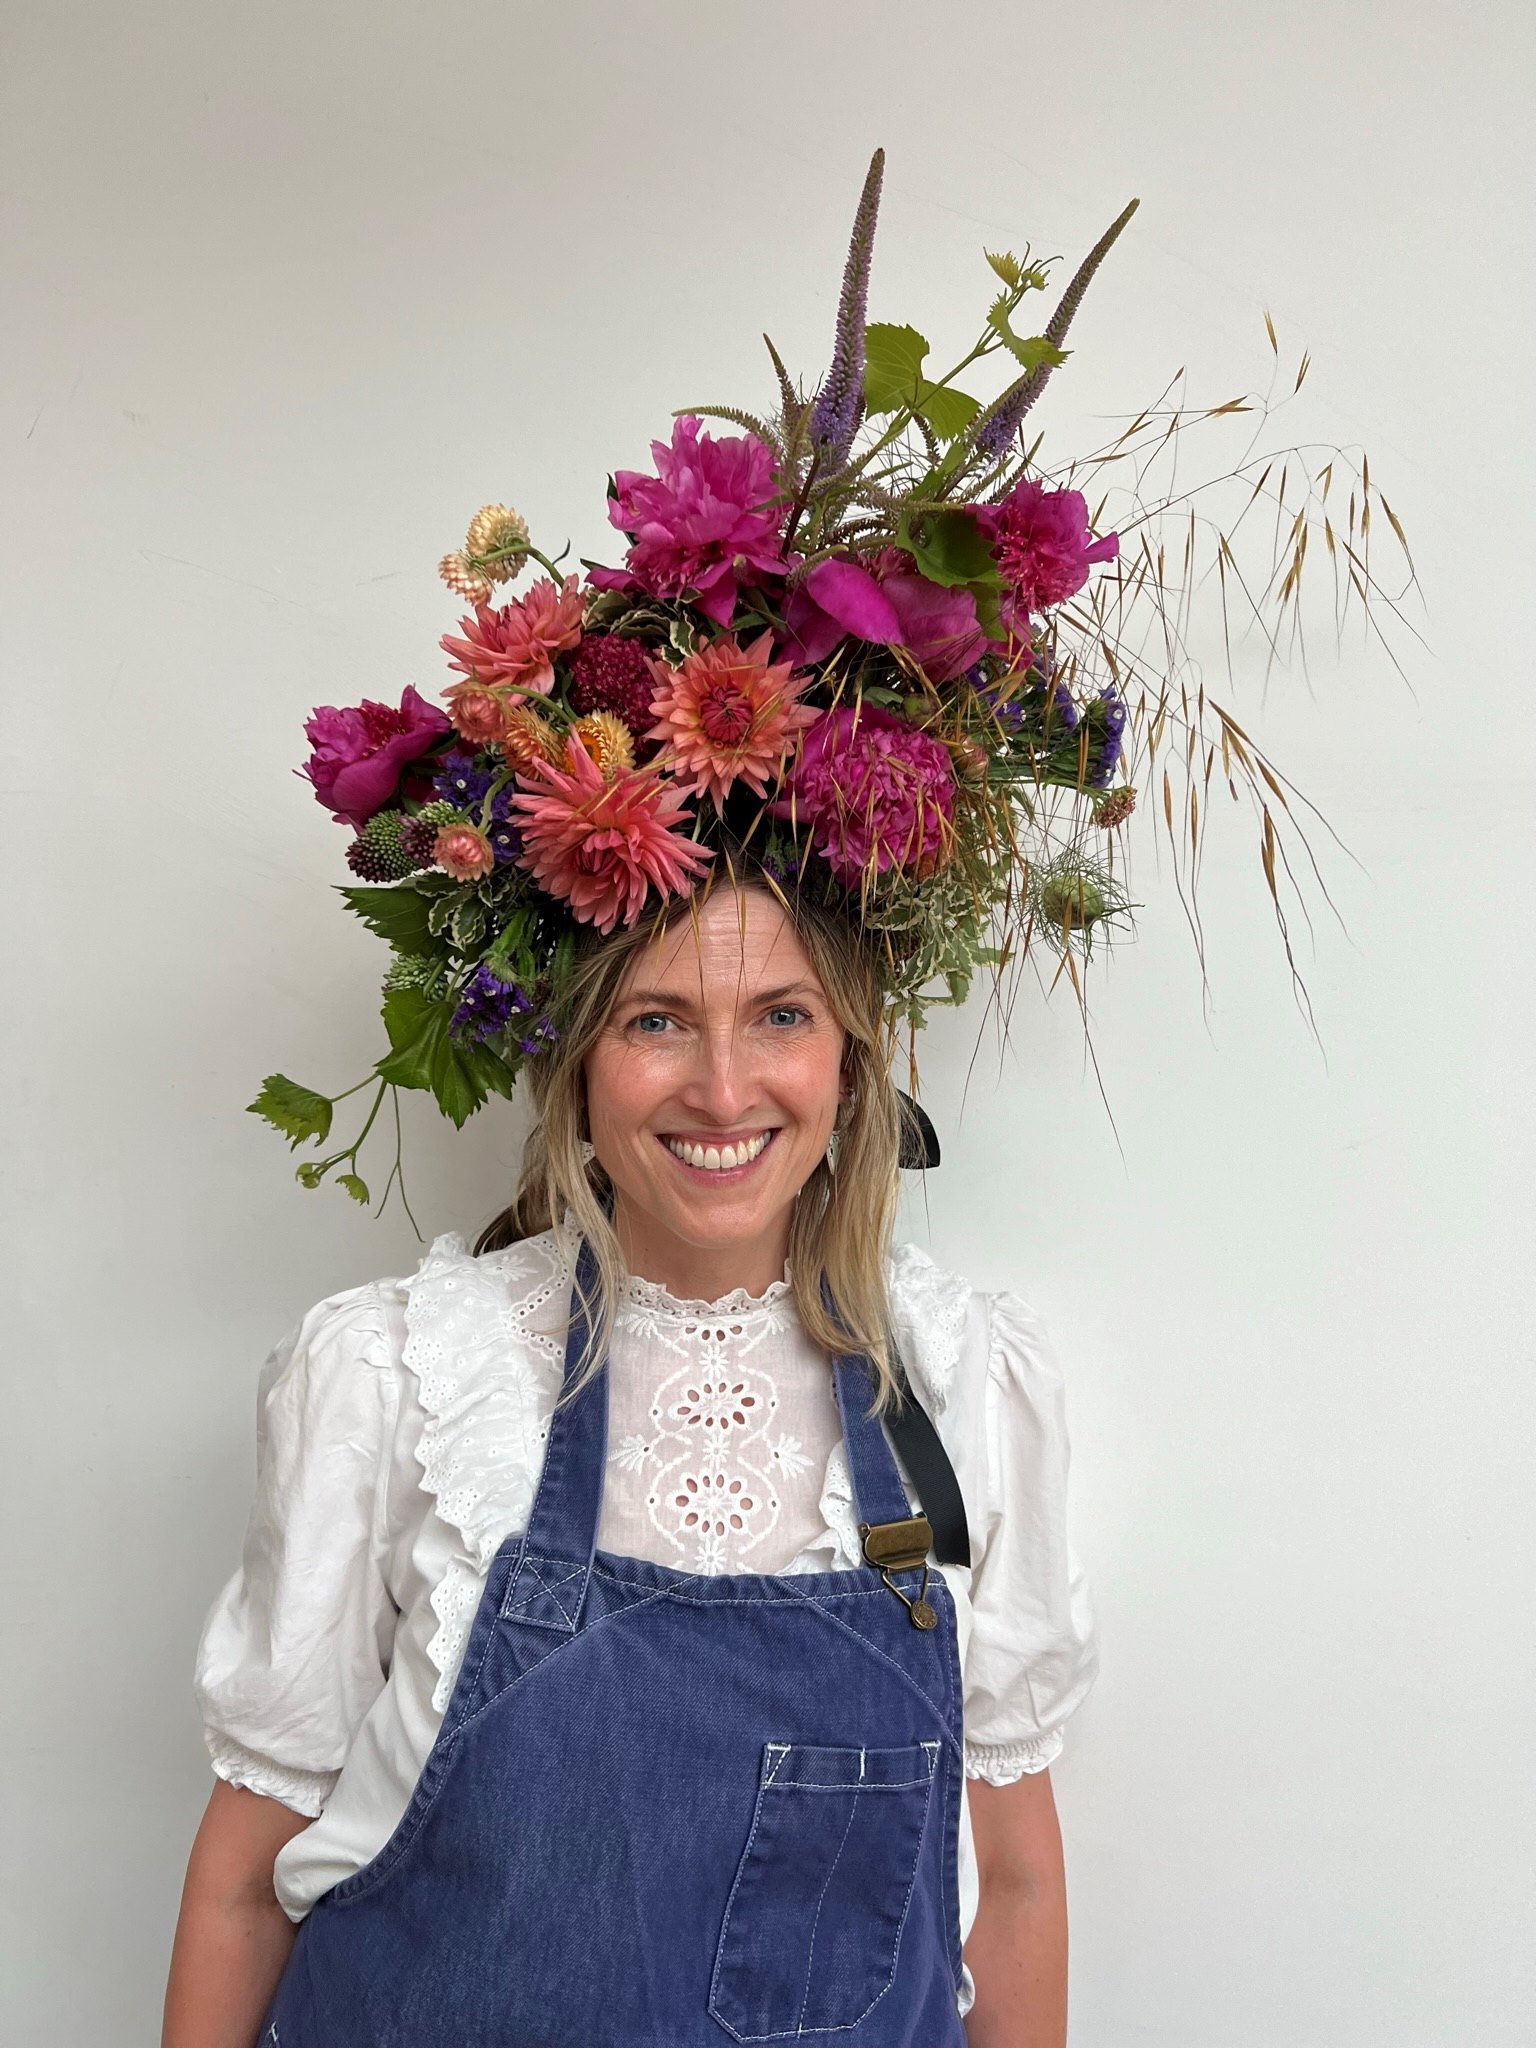 Elaborate flower crown from British Flowers Week flower crown workshop